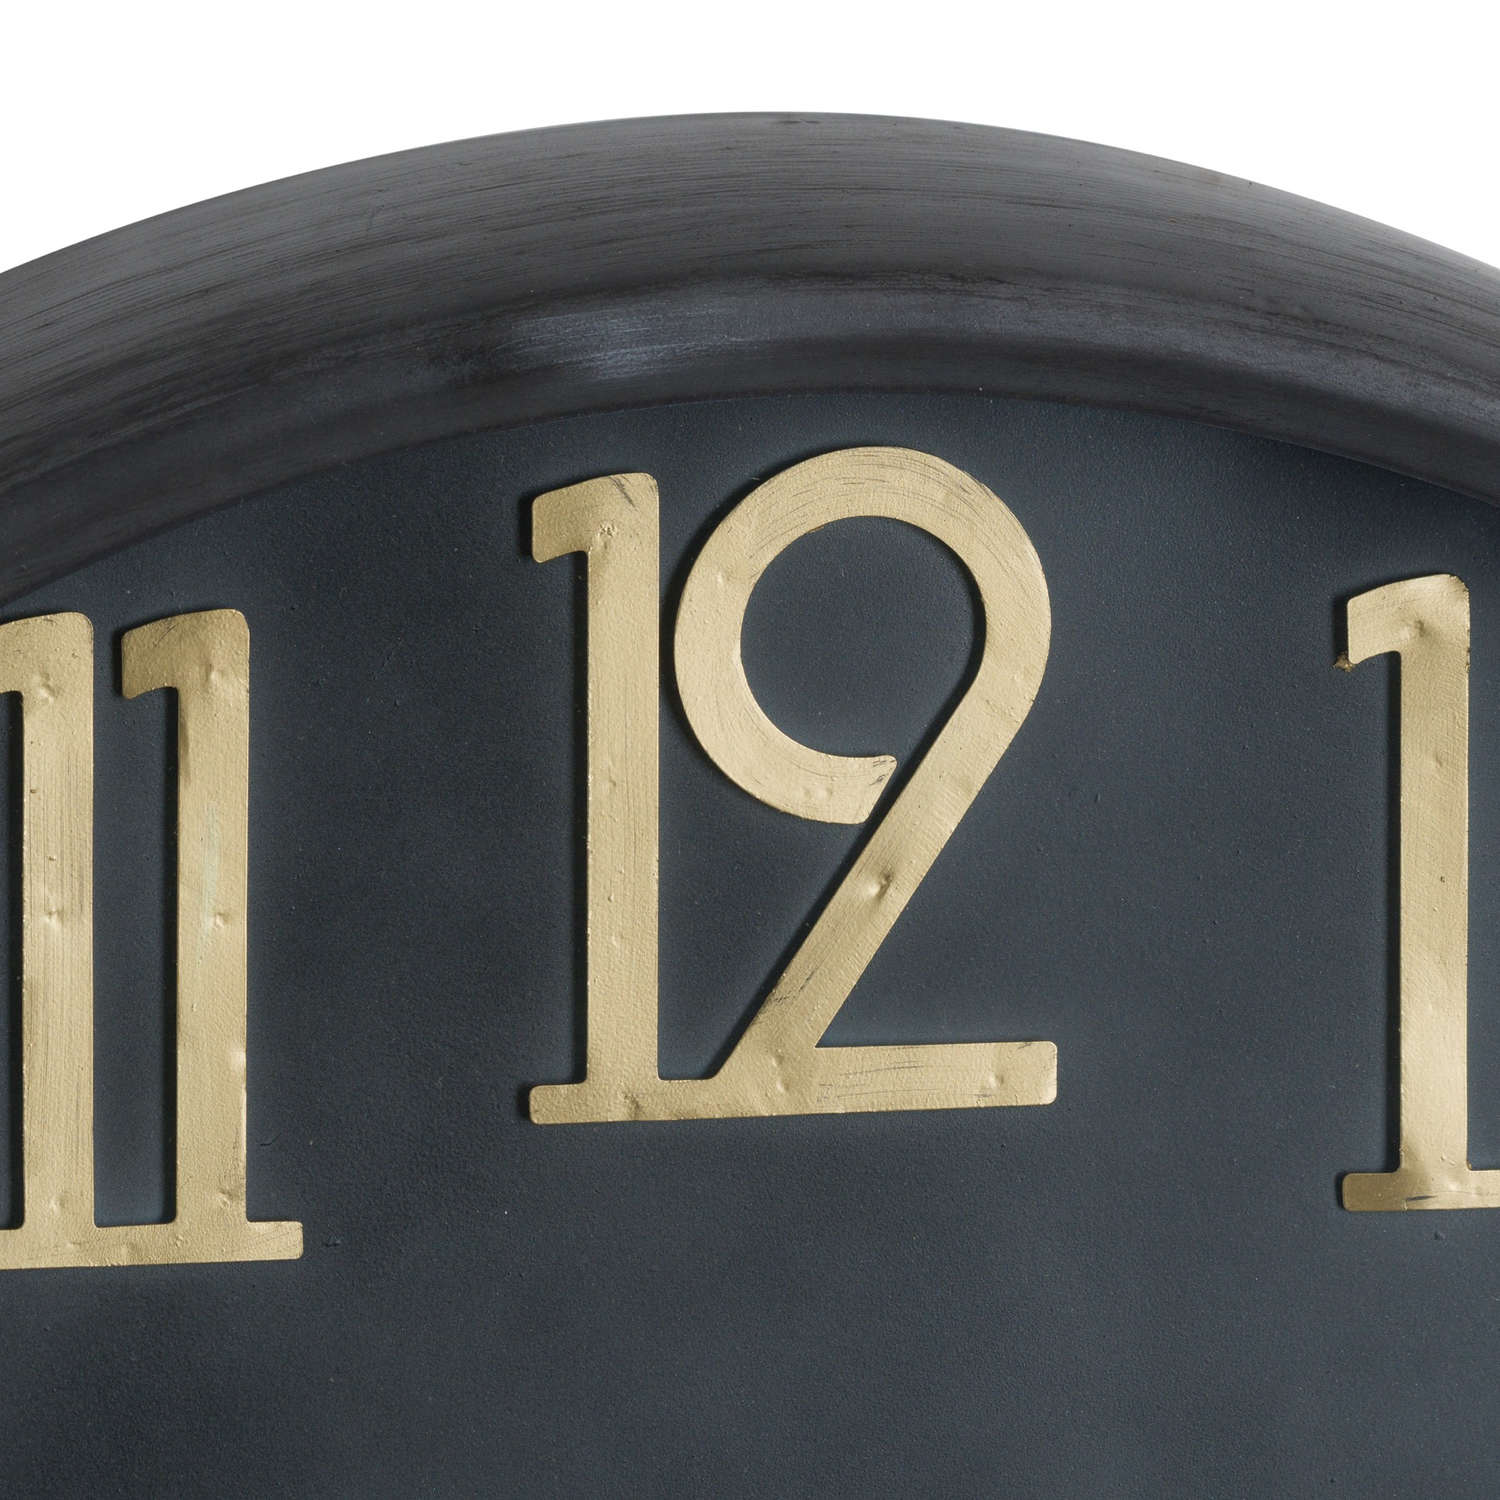 Soho Brass And Black Large Clock - Image 2